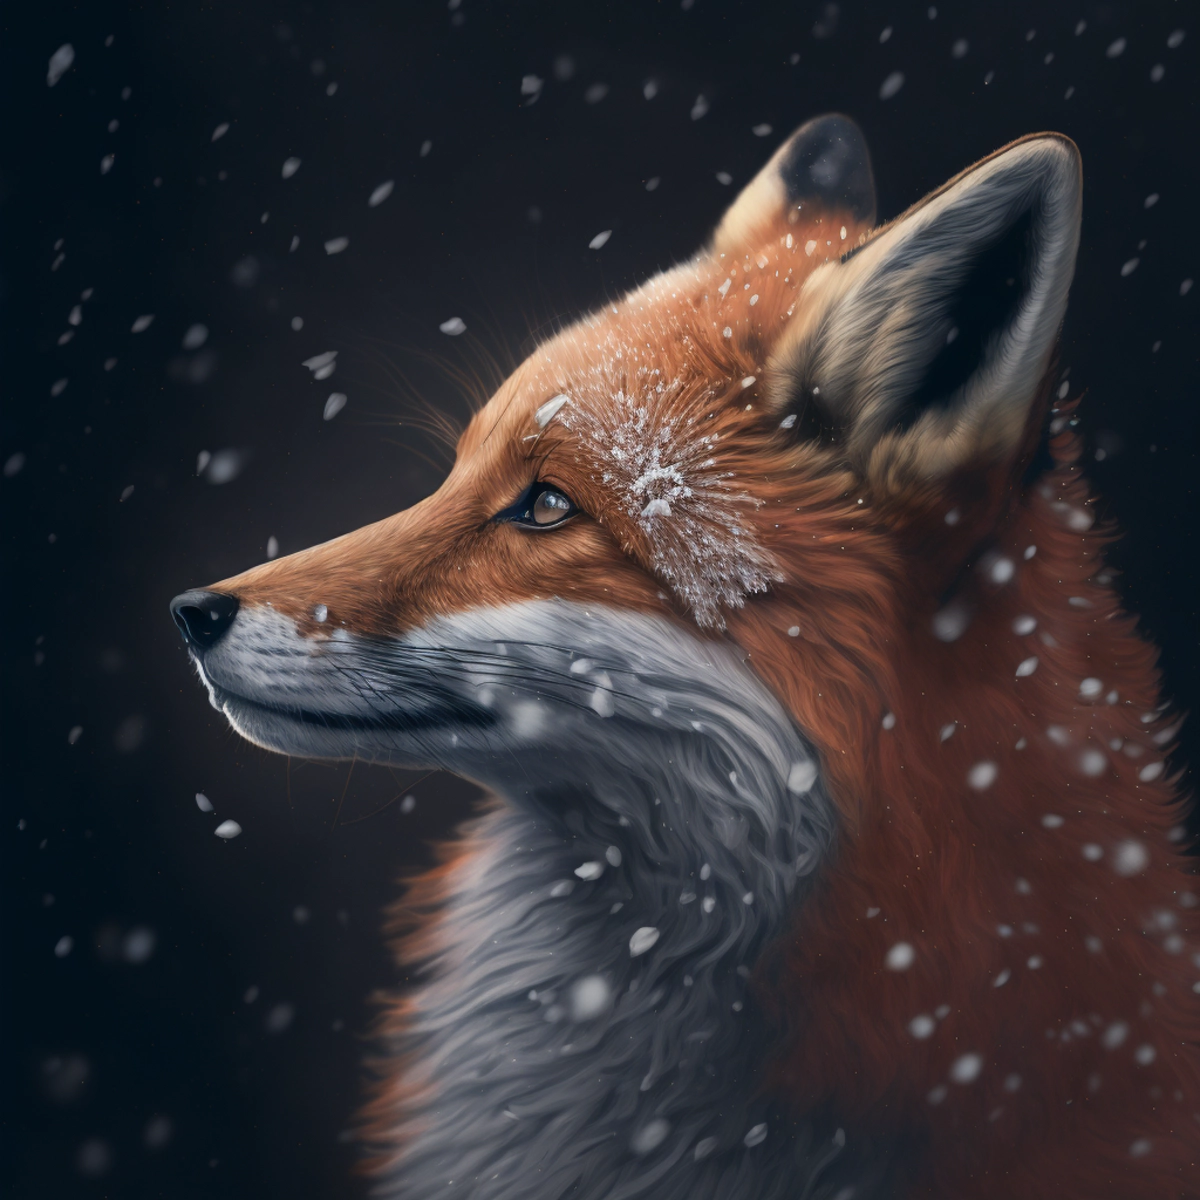 Um retrato aproximado de uma raposa curiosa, com flocos de neve descansando em seu pelo